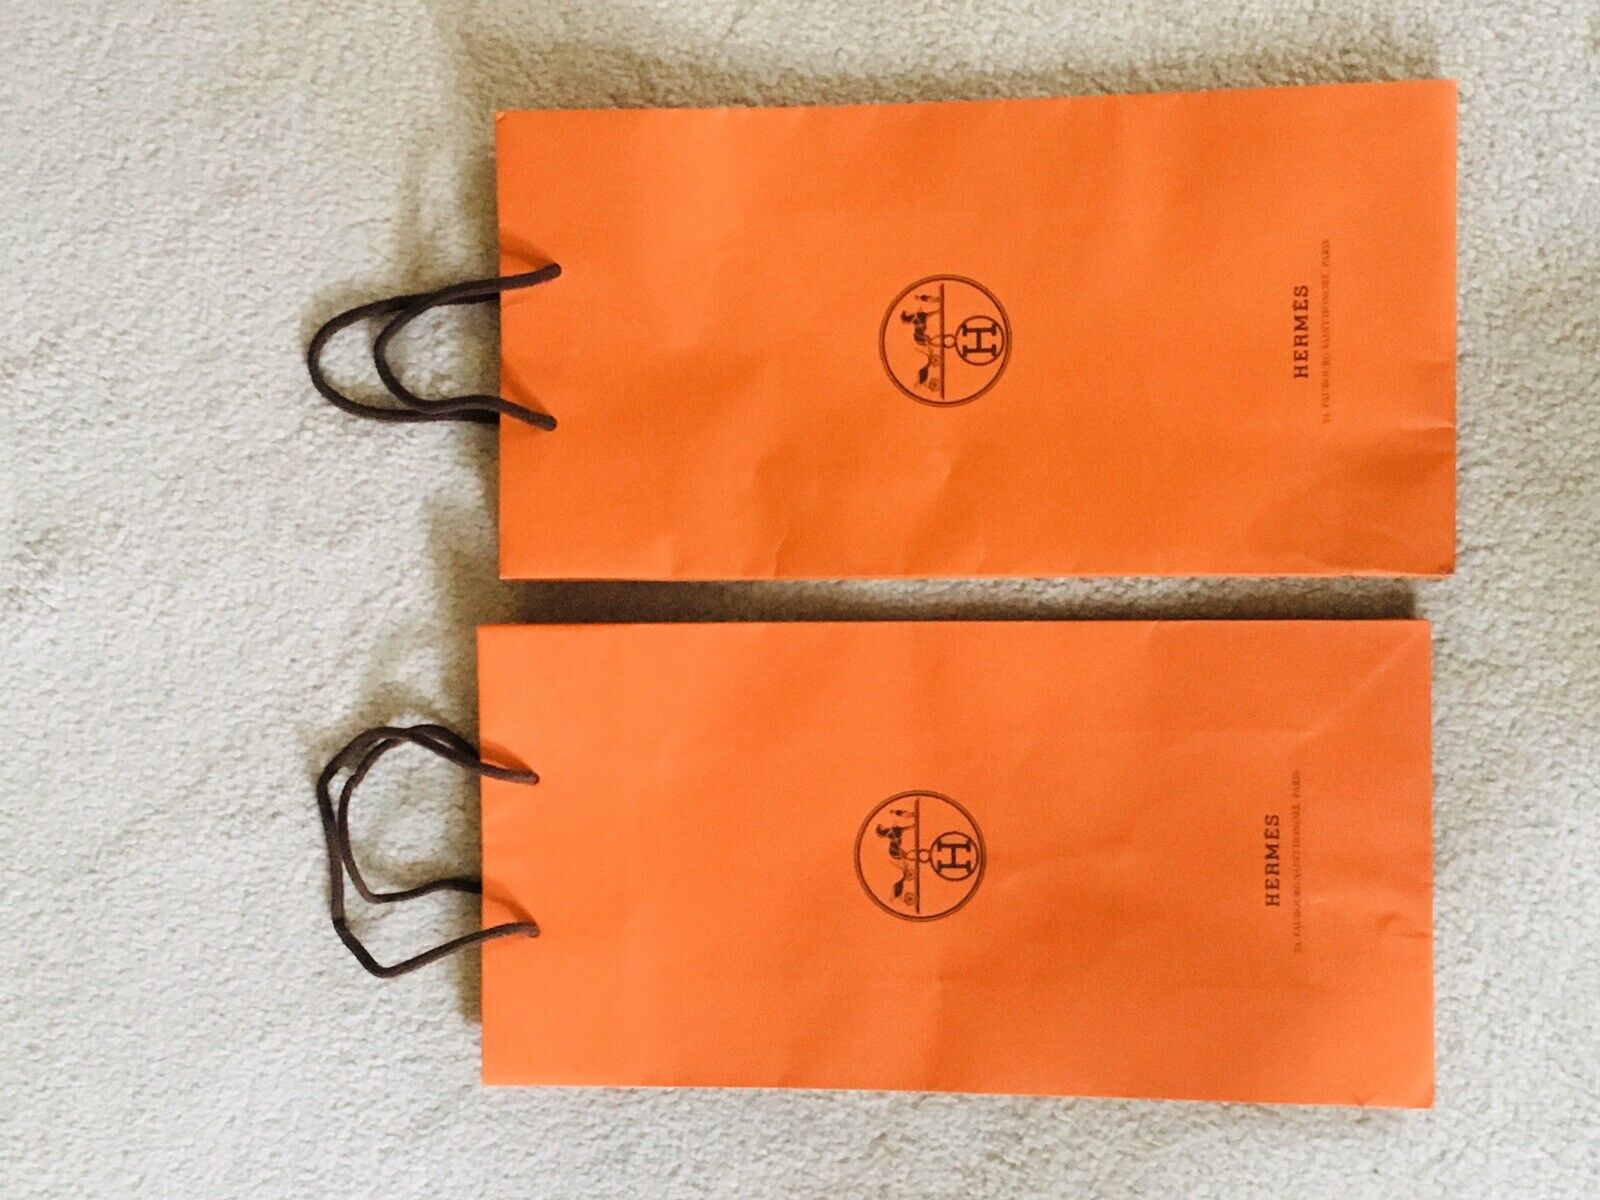 Hermes Empty Orange Shopping Gift Paper Bag Small （8.5×6×2.75"）